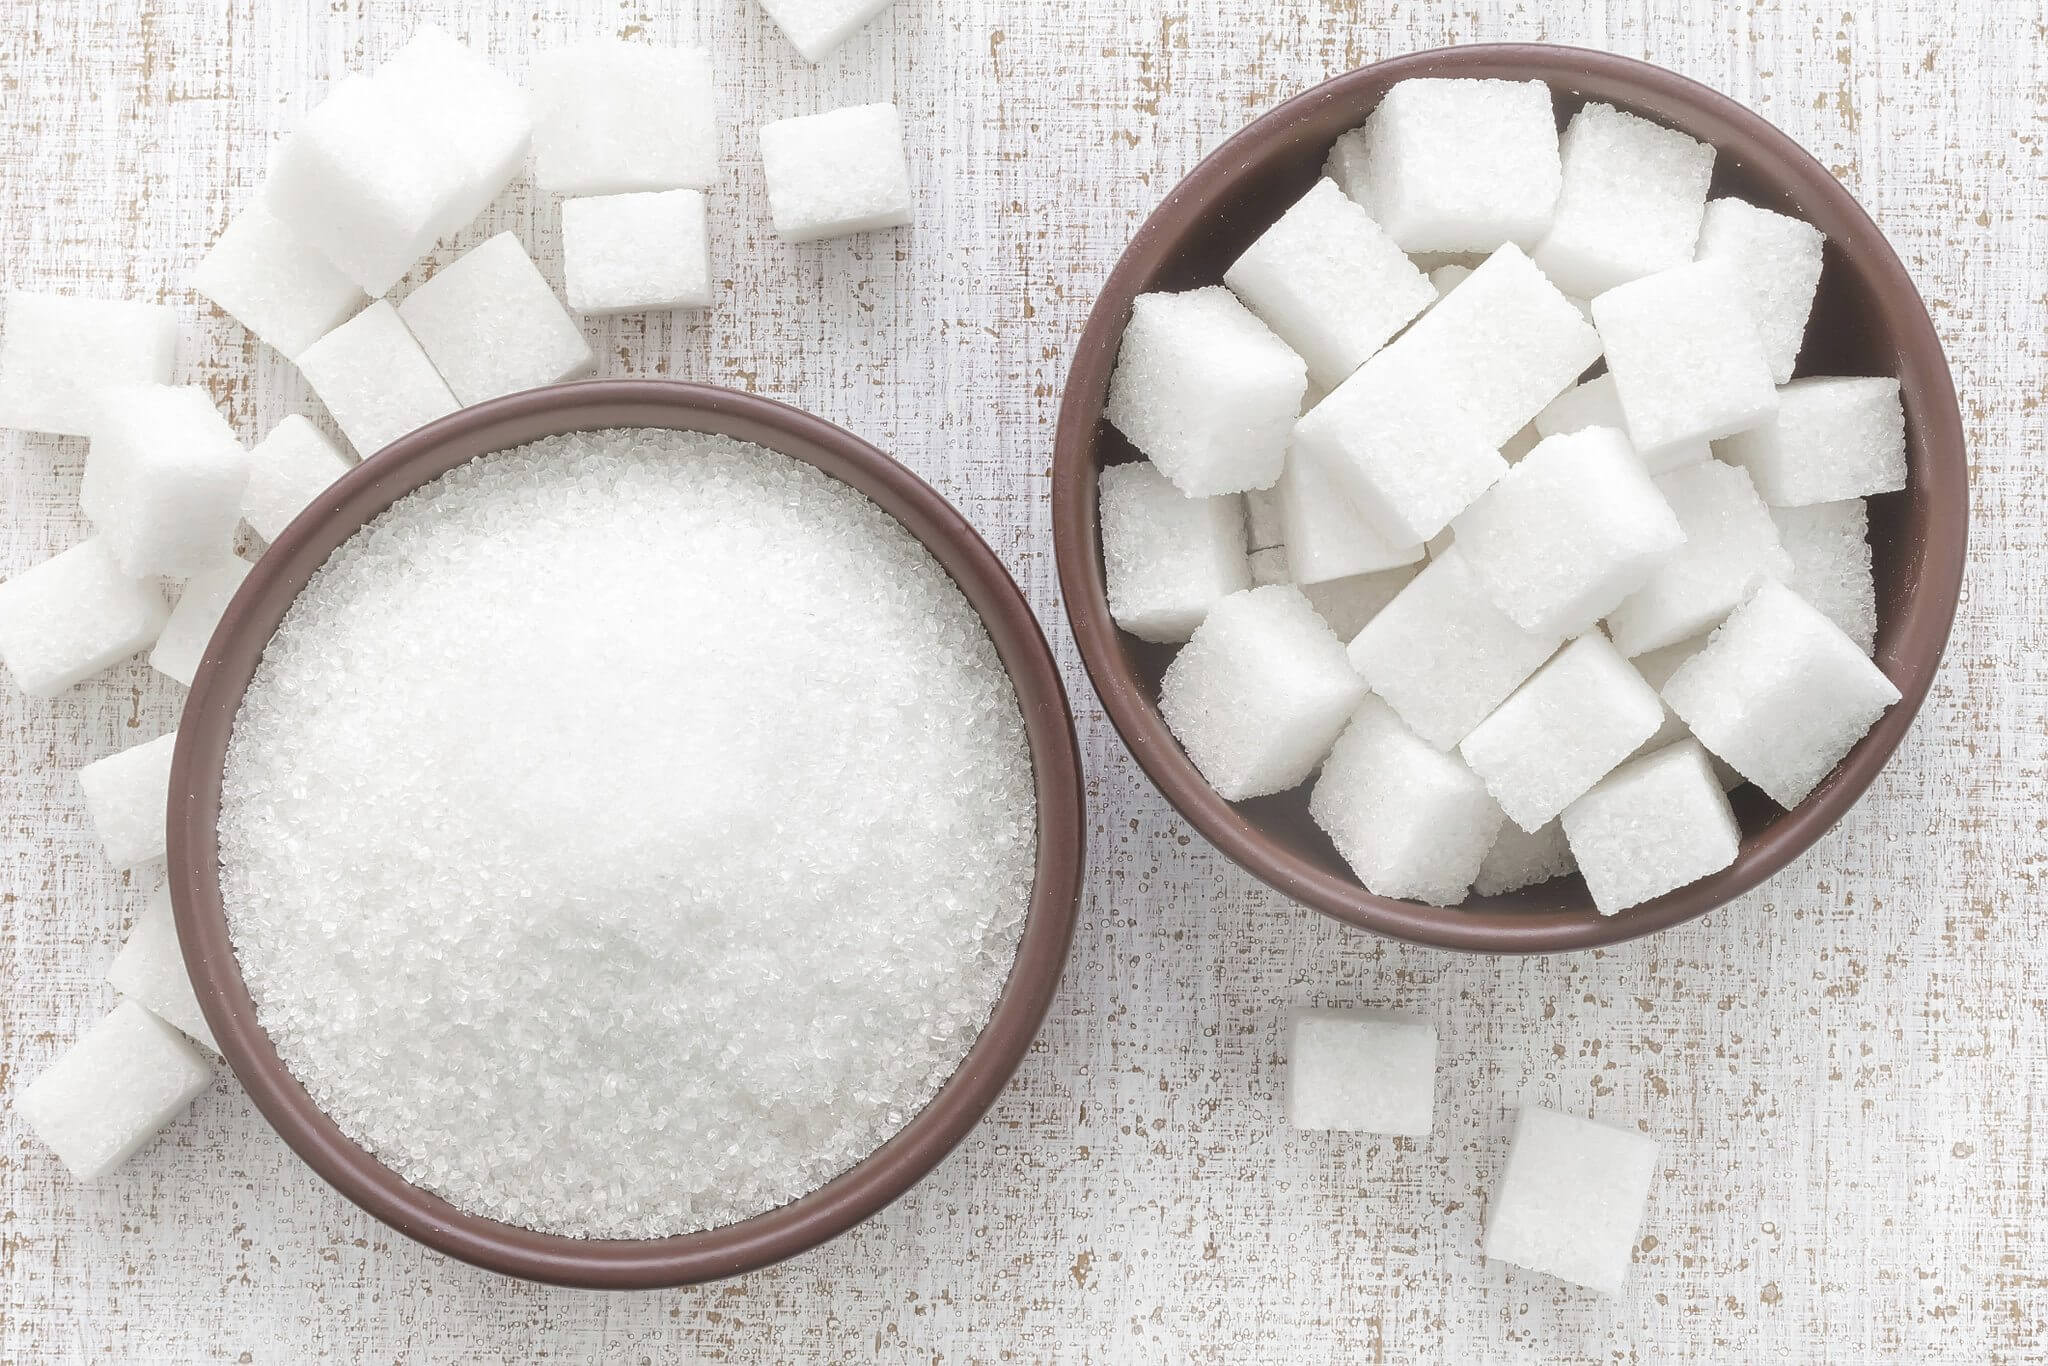 Açúcar faz mal? Conheça o sabor amargo do açúcar